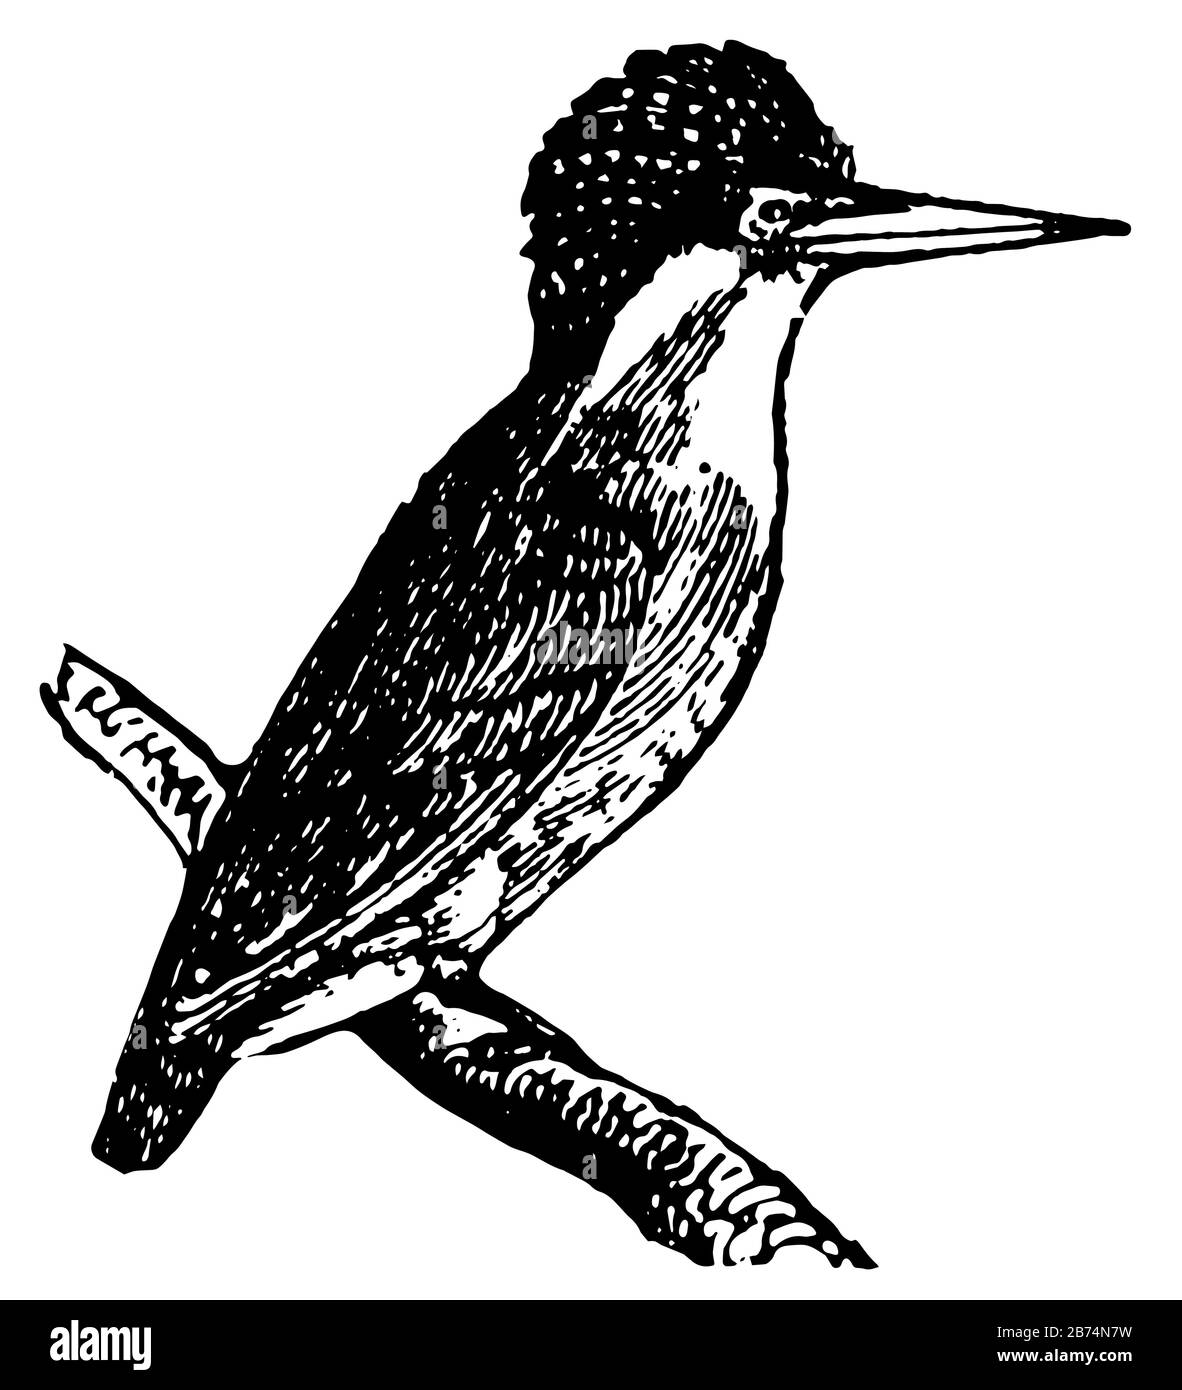 Le Kingfisher dépoli est généralement stocké avec des queues et des corps courts, un dessin vintage ou une illustration de gravure. Illustration de Vecteur